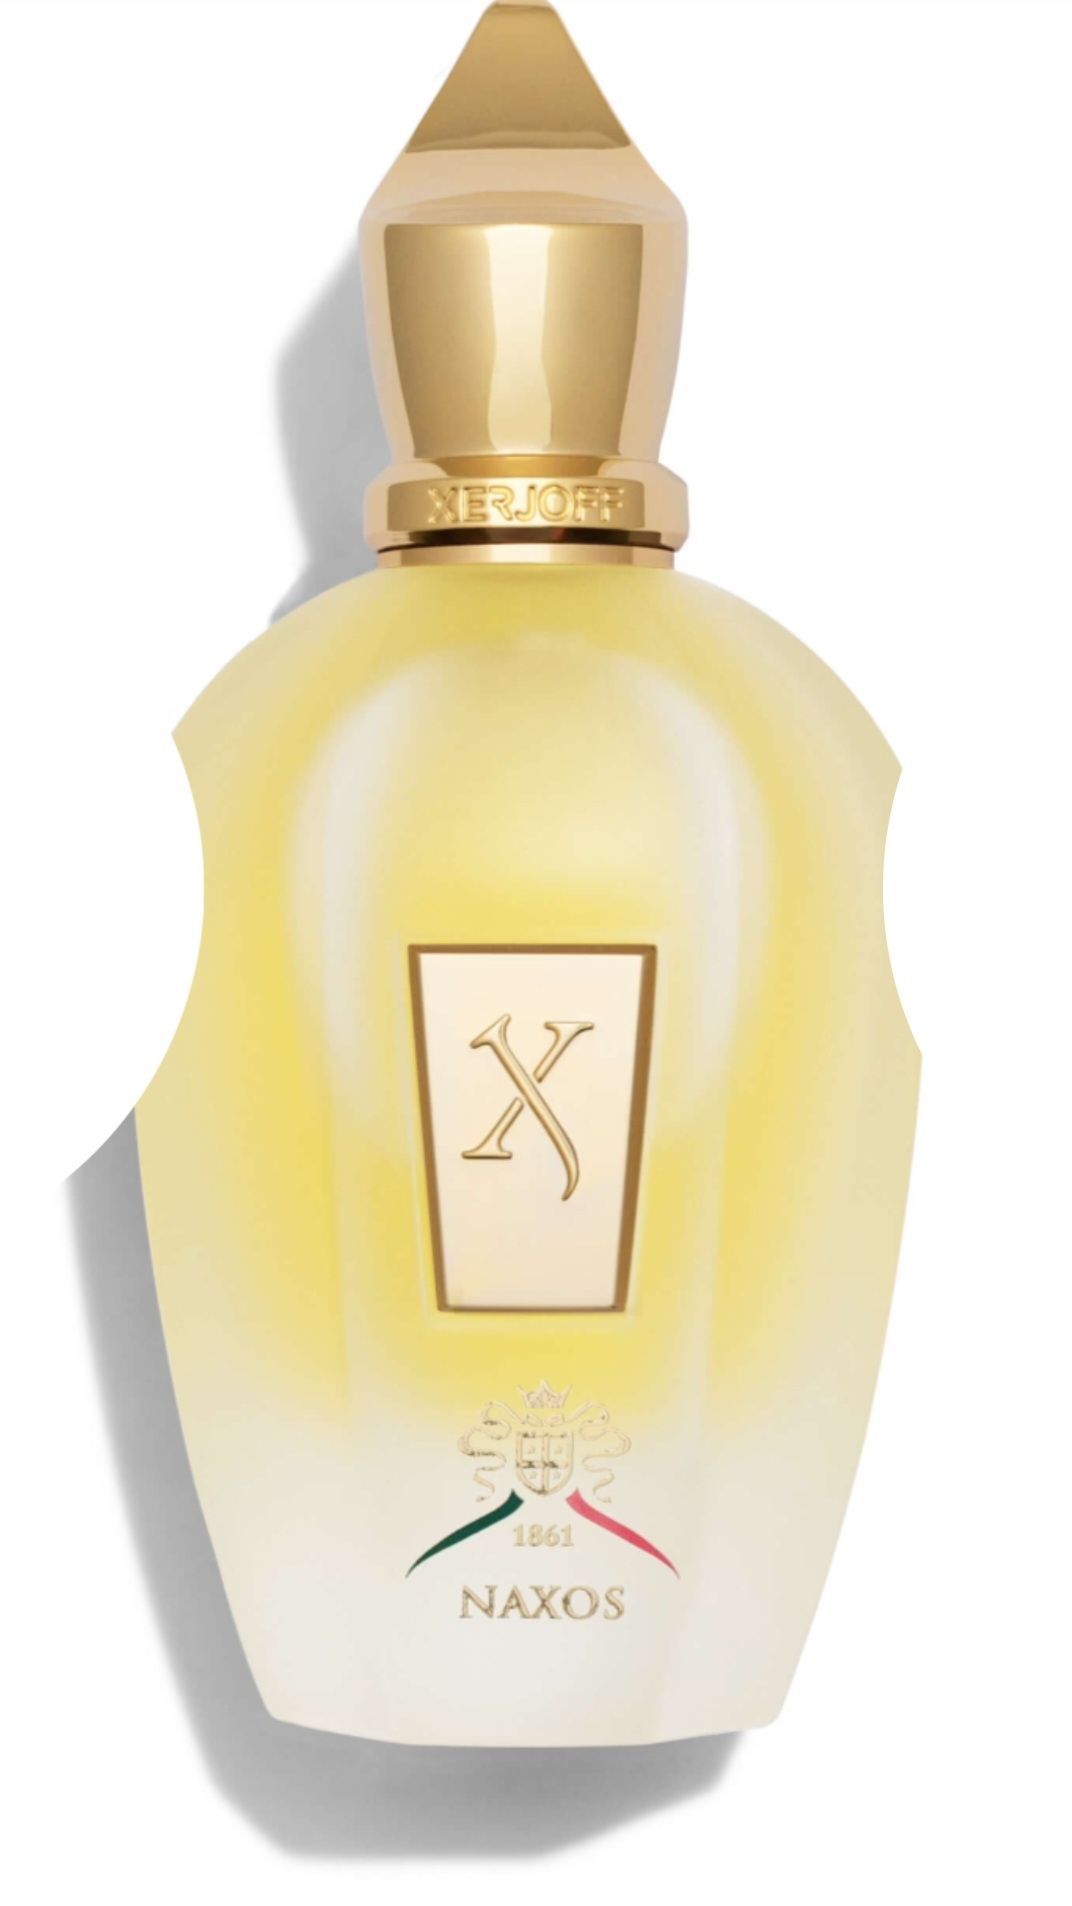 Naxos original parfum